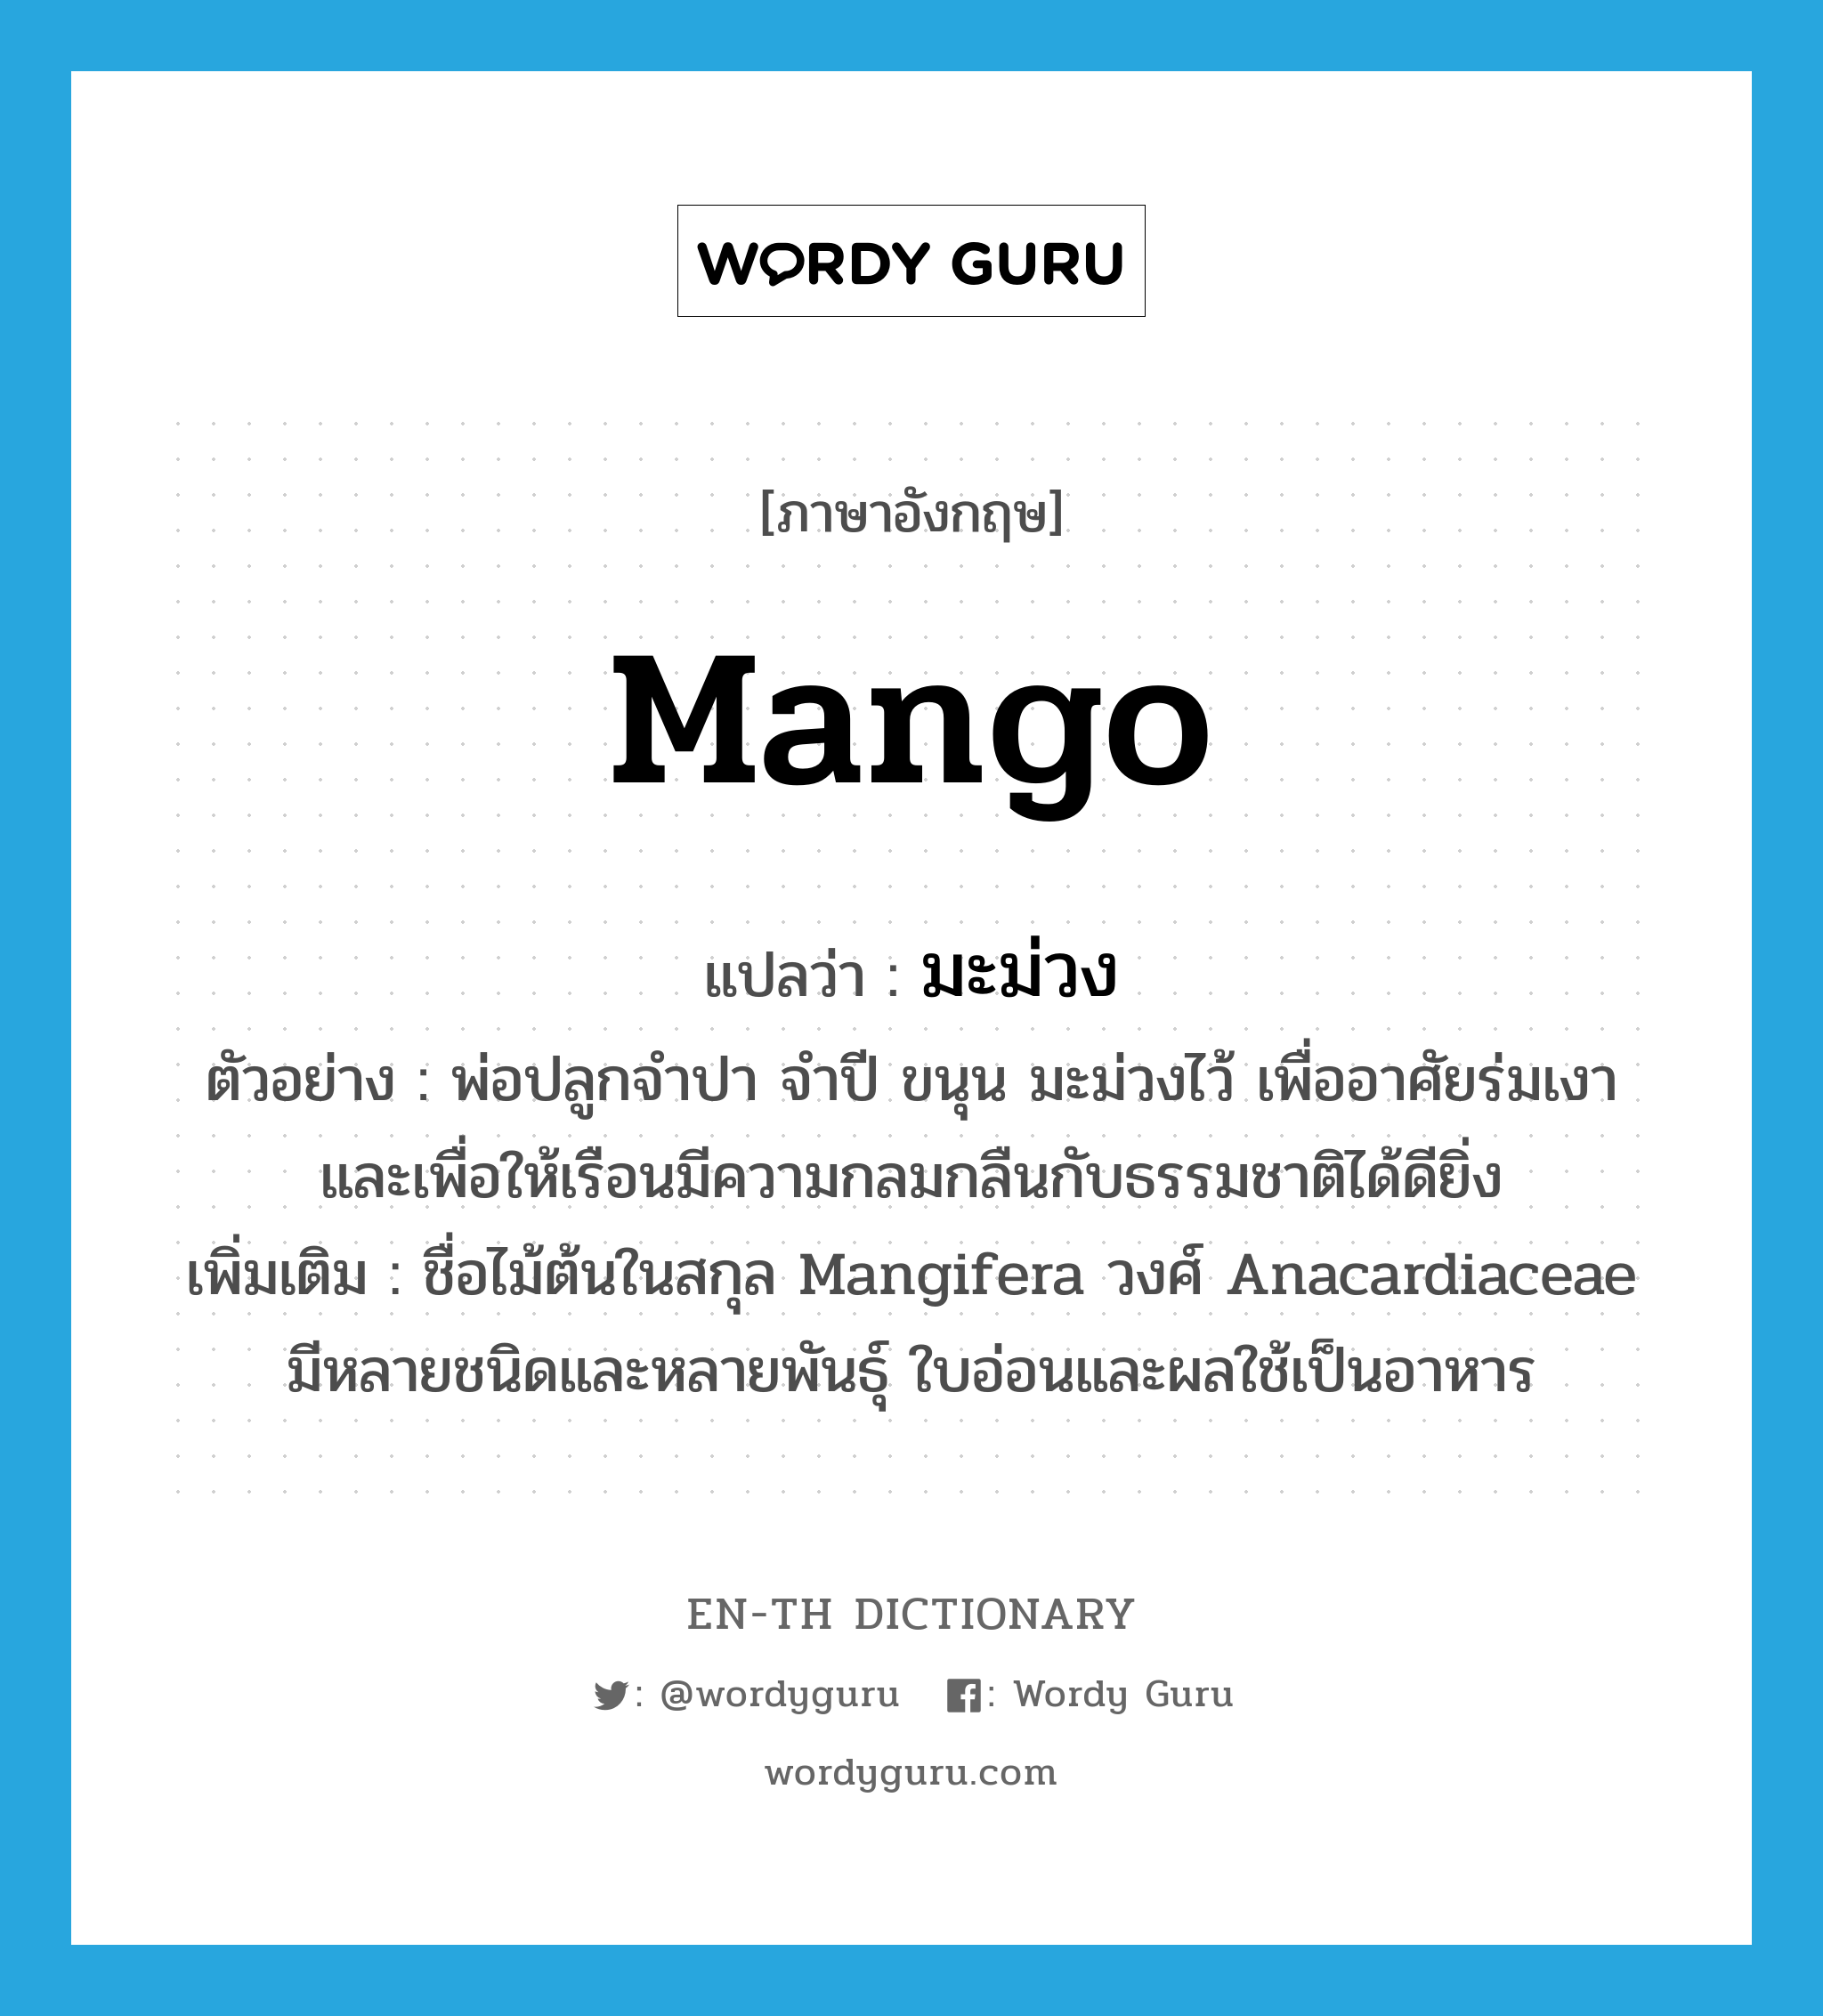 mango แปลว่า?, คำศัพท์ภาษาอังกฤษ mango แปลว่า มะม่วง ประเภท N ตัวอย่าง พ่อปลูกจำปา จำปี ขนุน มะม่วงไว้ เพื่ออาศัยร่มเงาและเพื่อให้เรือนมีความกลมกลืนกับธรรมชาติได้ดียิ่ง เพิ่มเติม ชื่อไม้ต้นในสกุล Mangifera วงศ์ Anacardiaceae มีหลายชนิดและหลายพันธุ์ ใบอ่อนและผลใช้เป็นอาหาร หมวด N